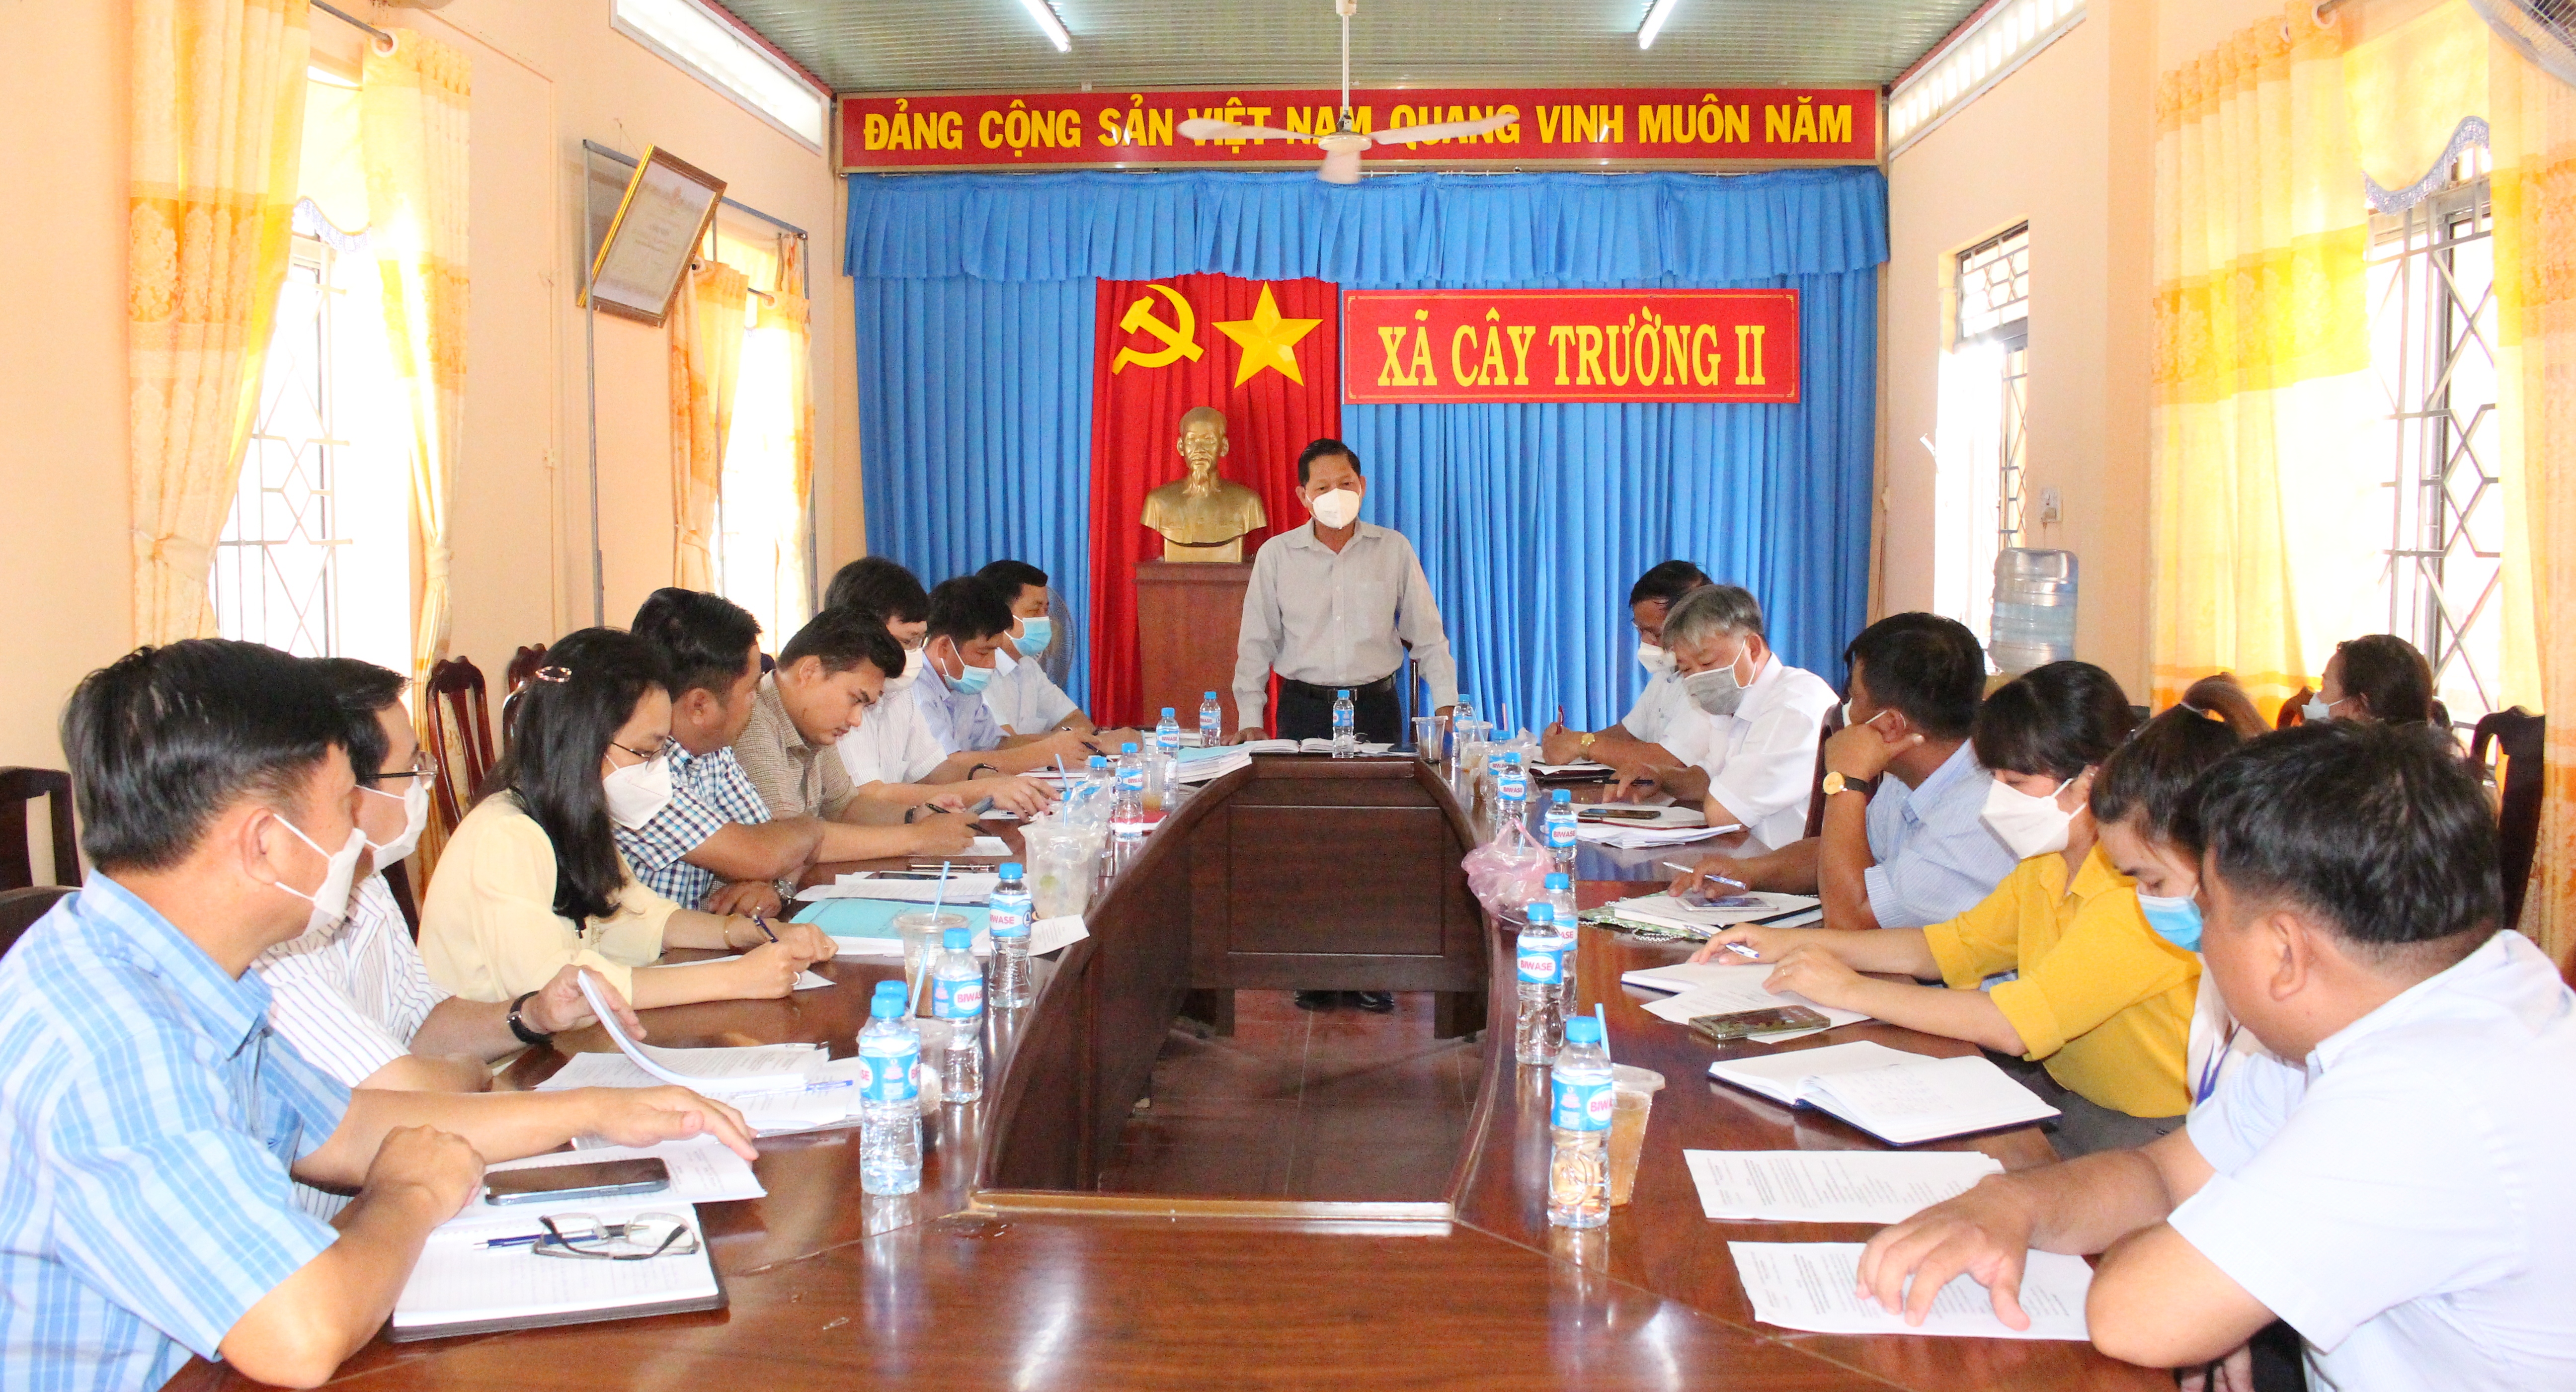 Ông Lưu Văn Long - Phó Chủ tịch HĐND huyện phát biểu chỉ đạo tại buổi giám sát ở xã Cây Trường II.G II